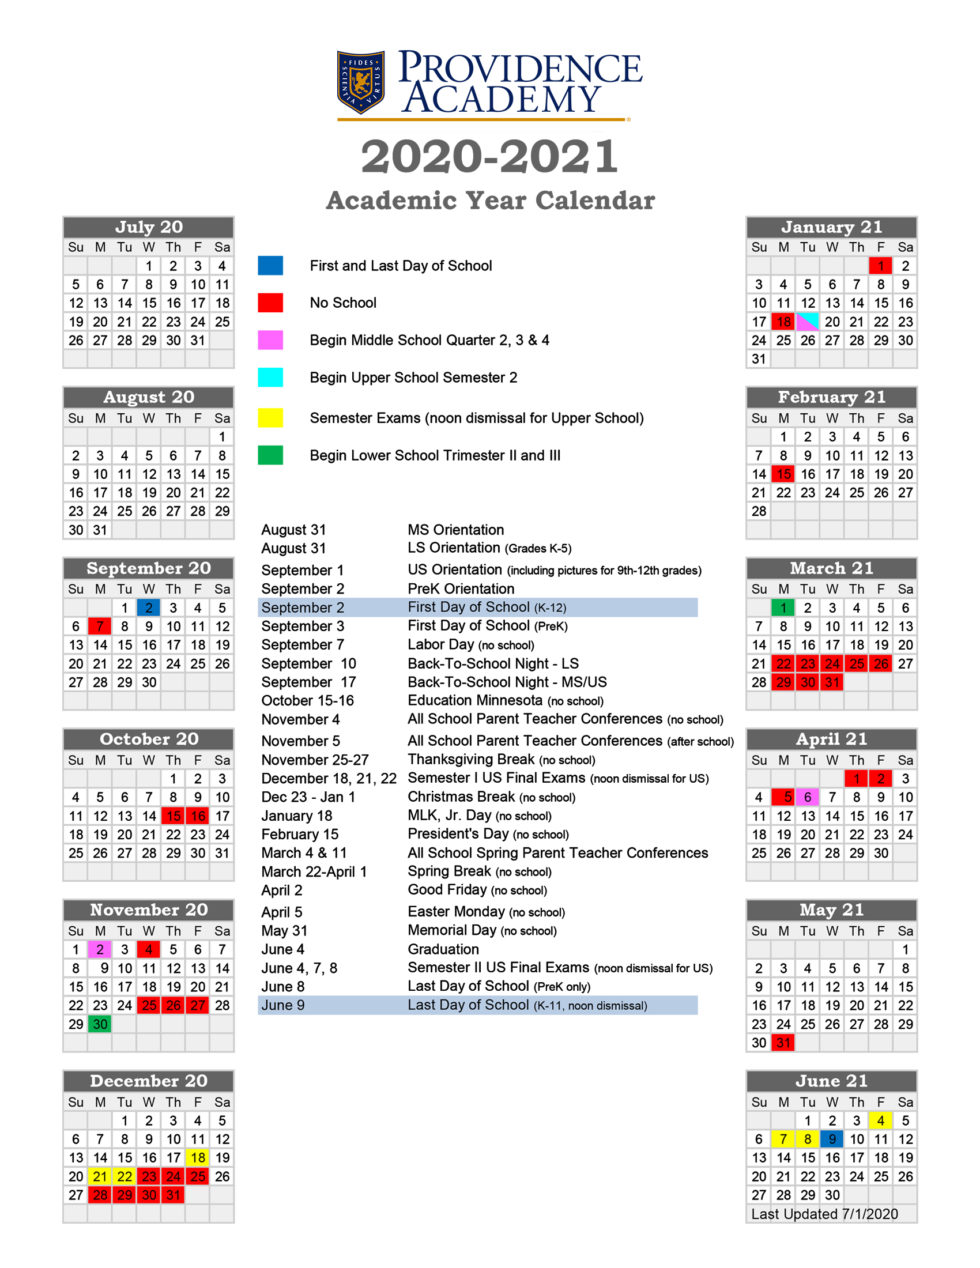 academic-calendar-providence-academy